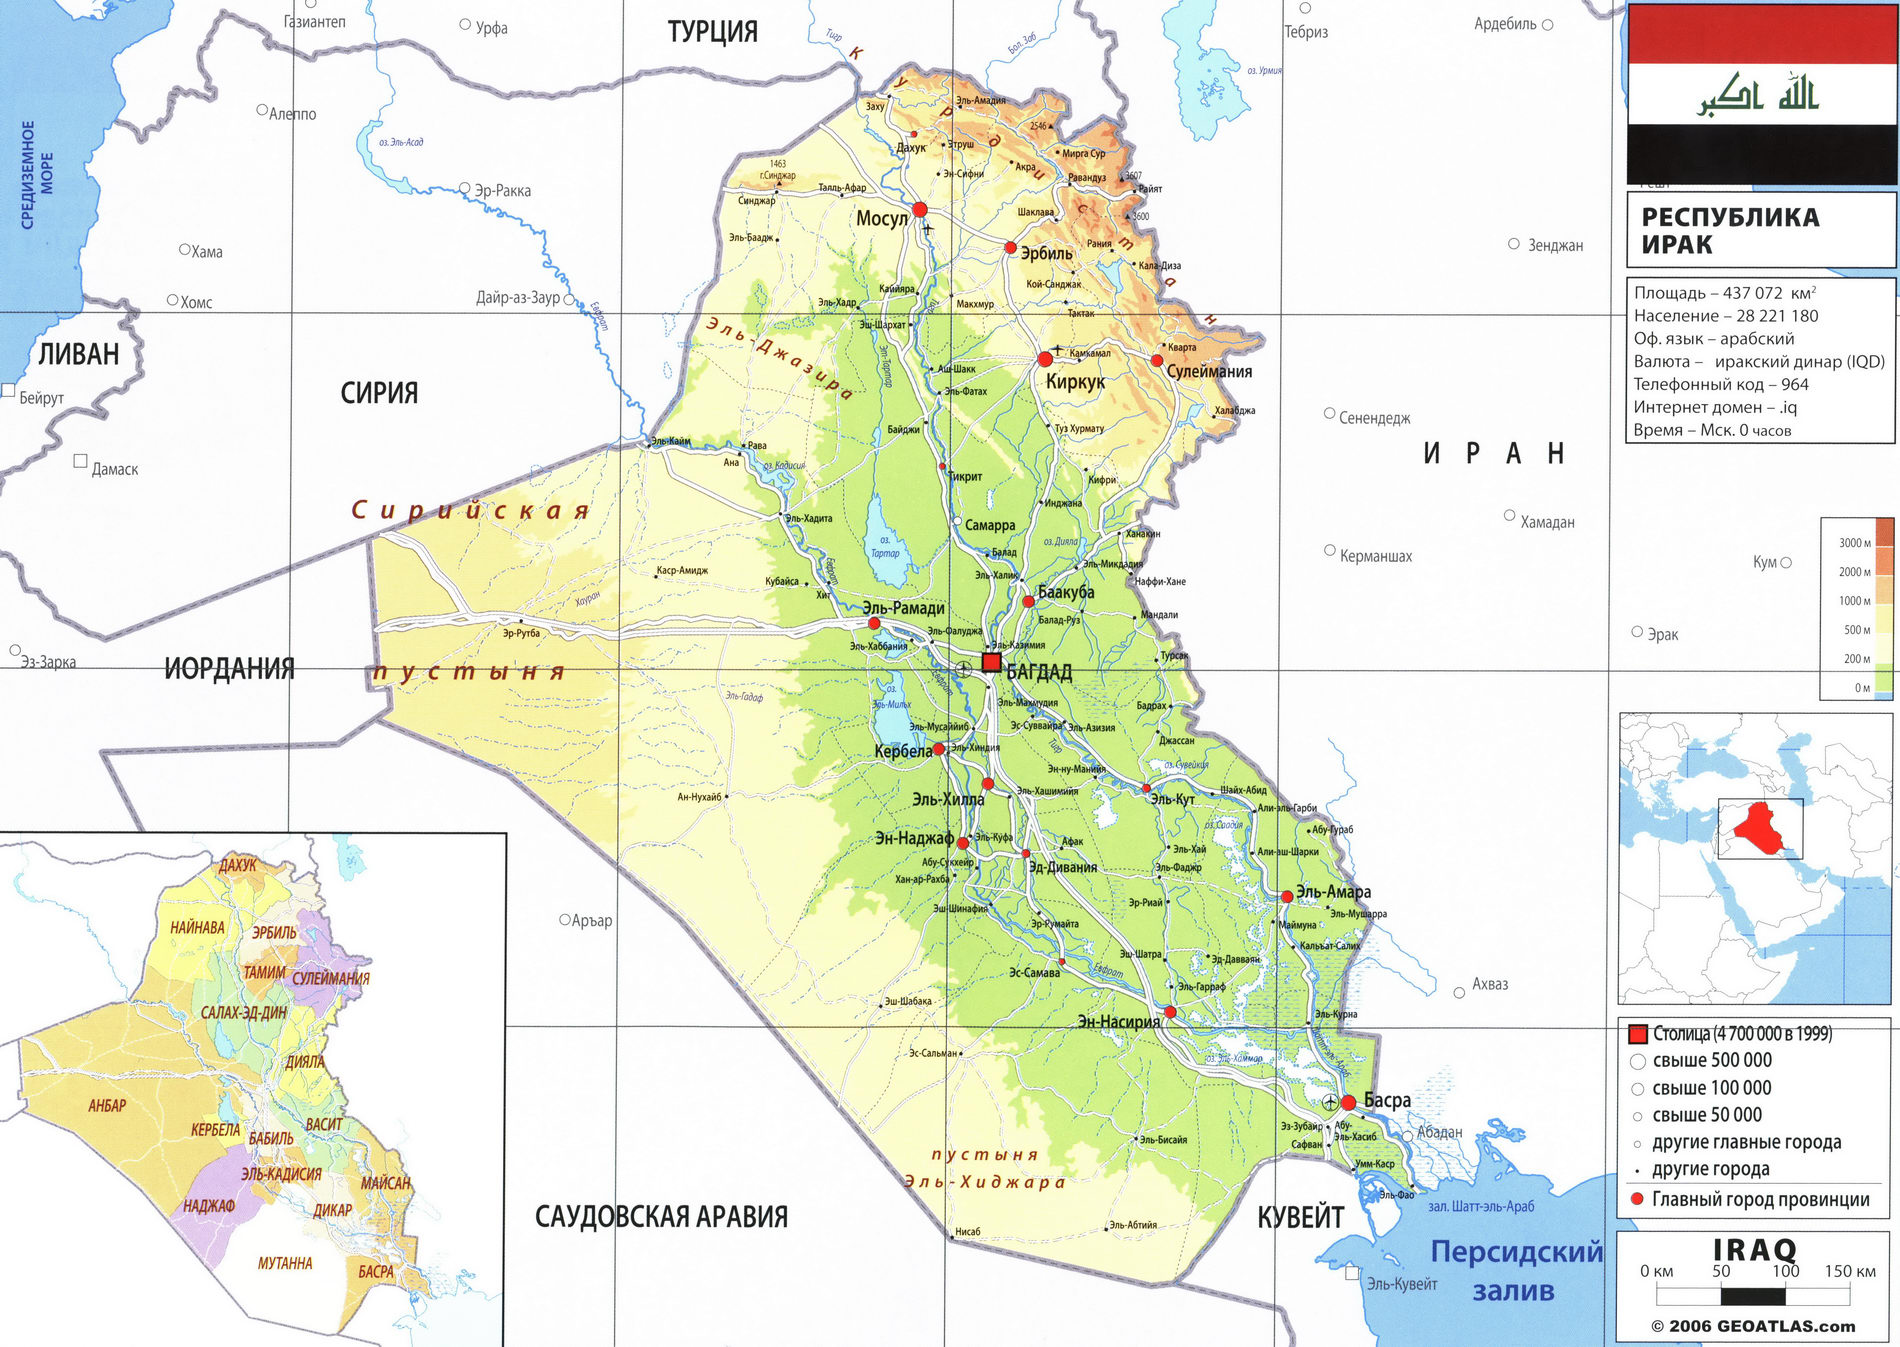 Ирак карта на русском языке и географическое описание страны - Атлас мира